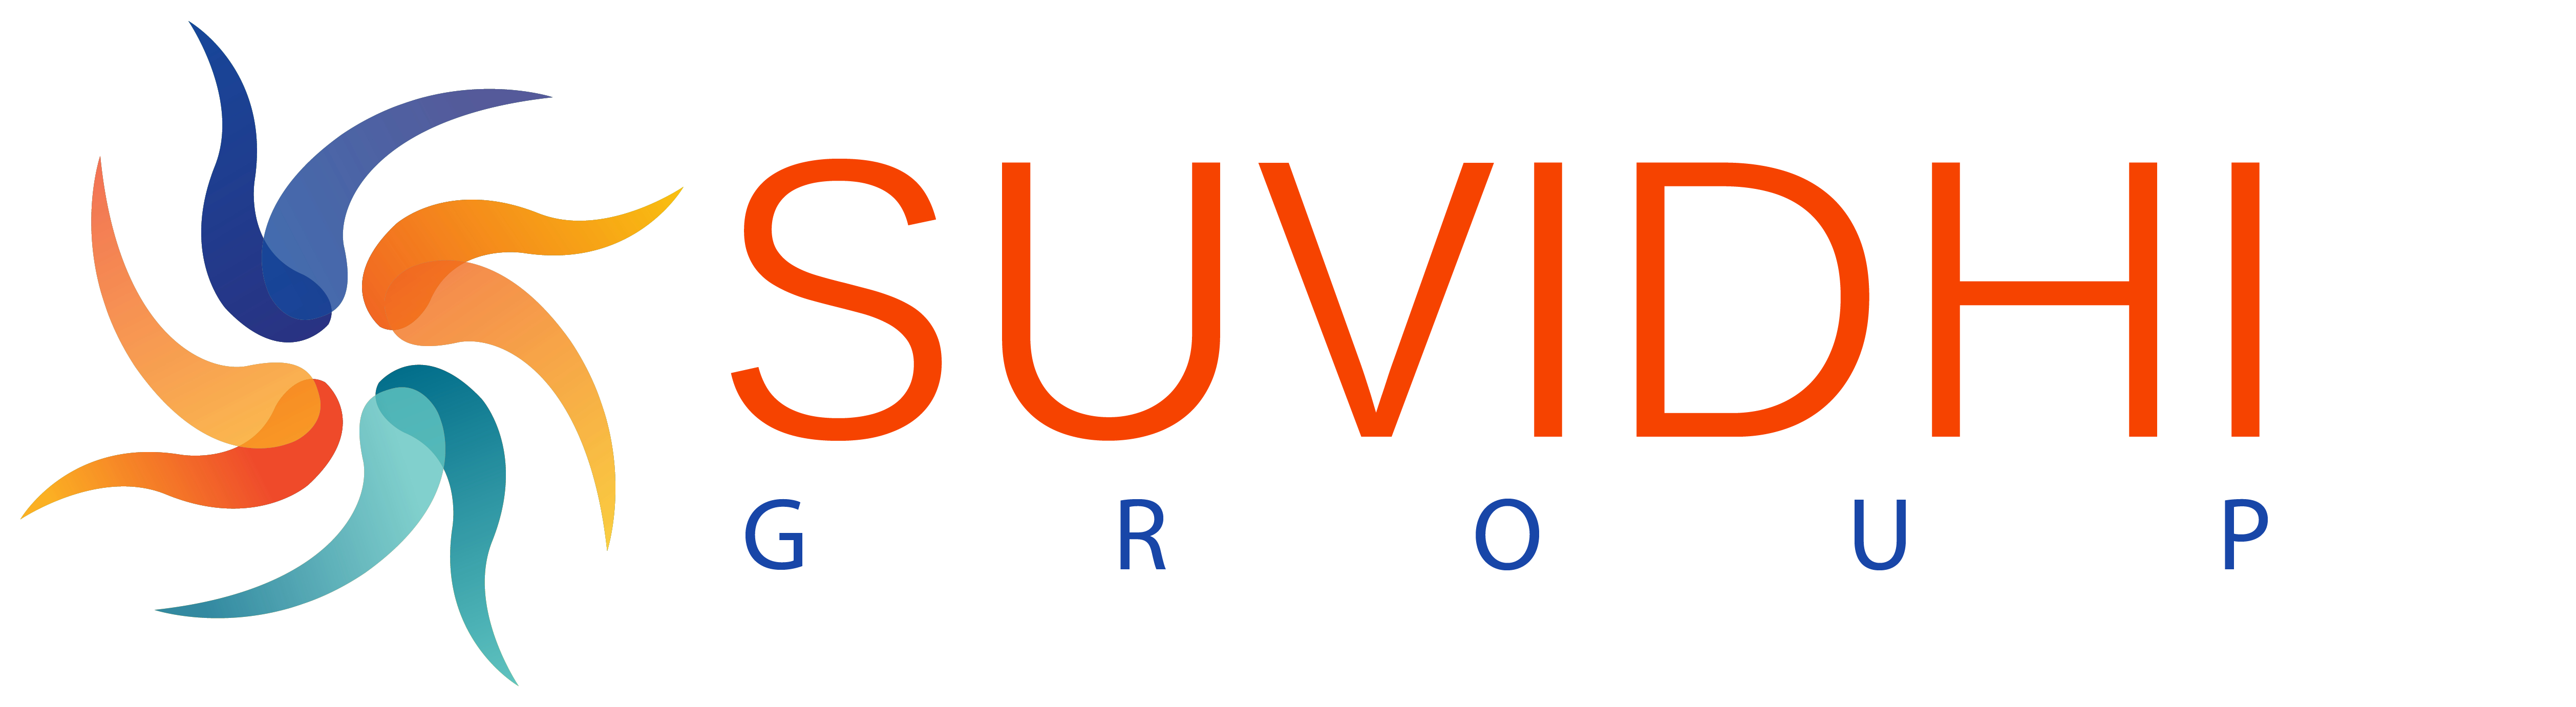 Suvidhi Logo Images